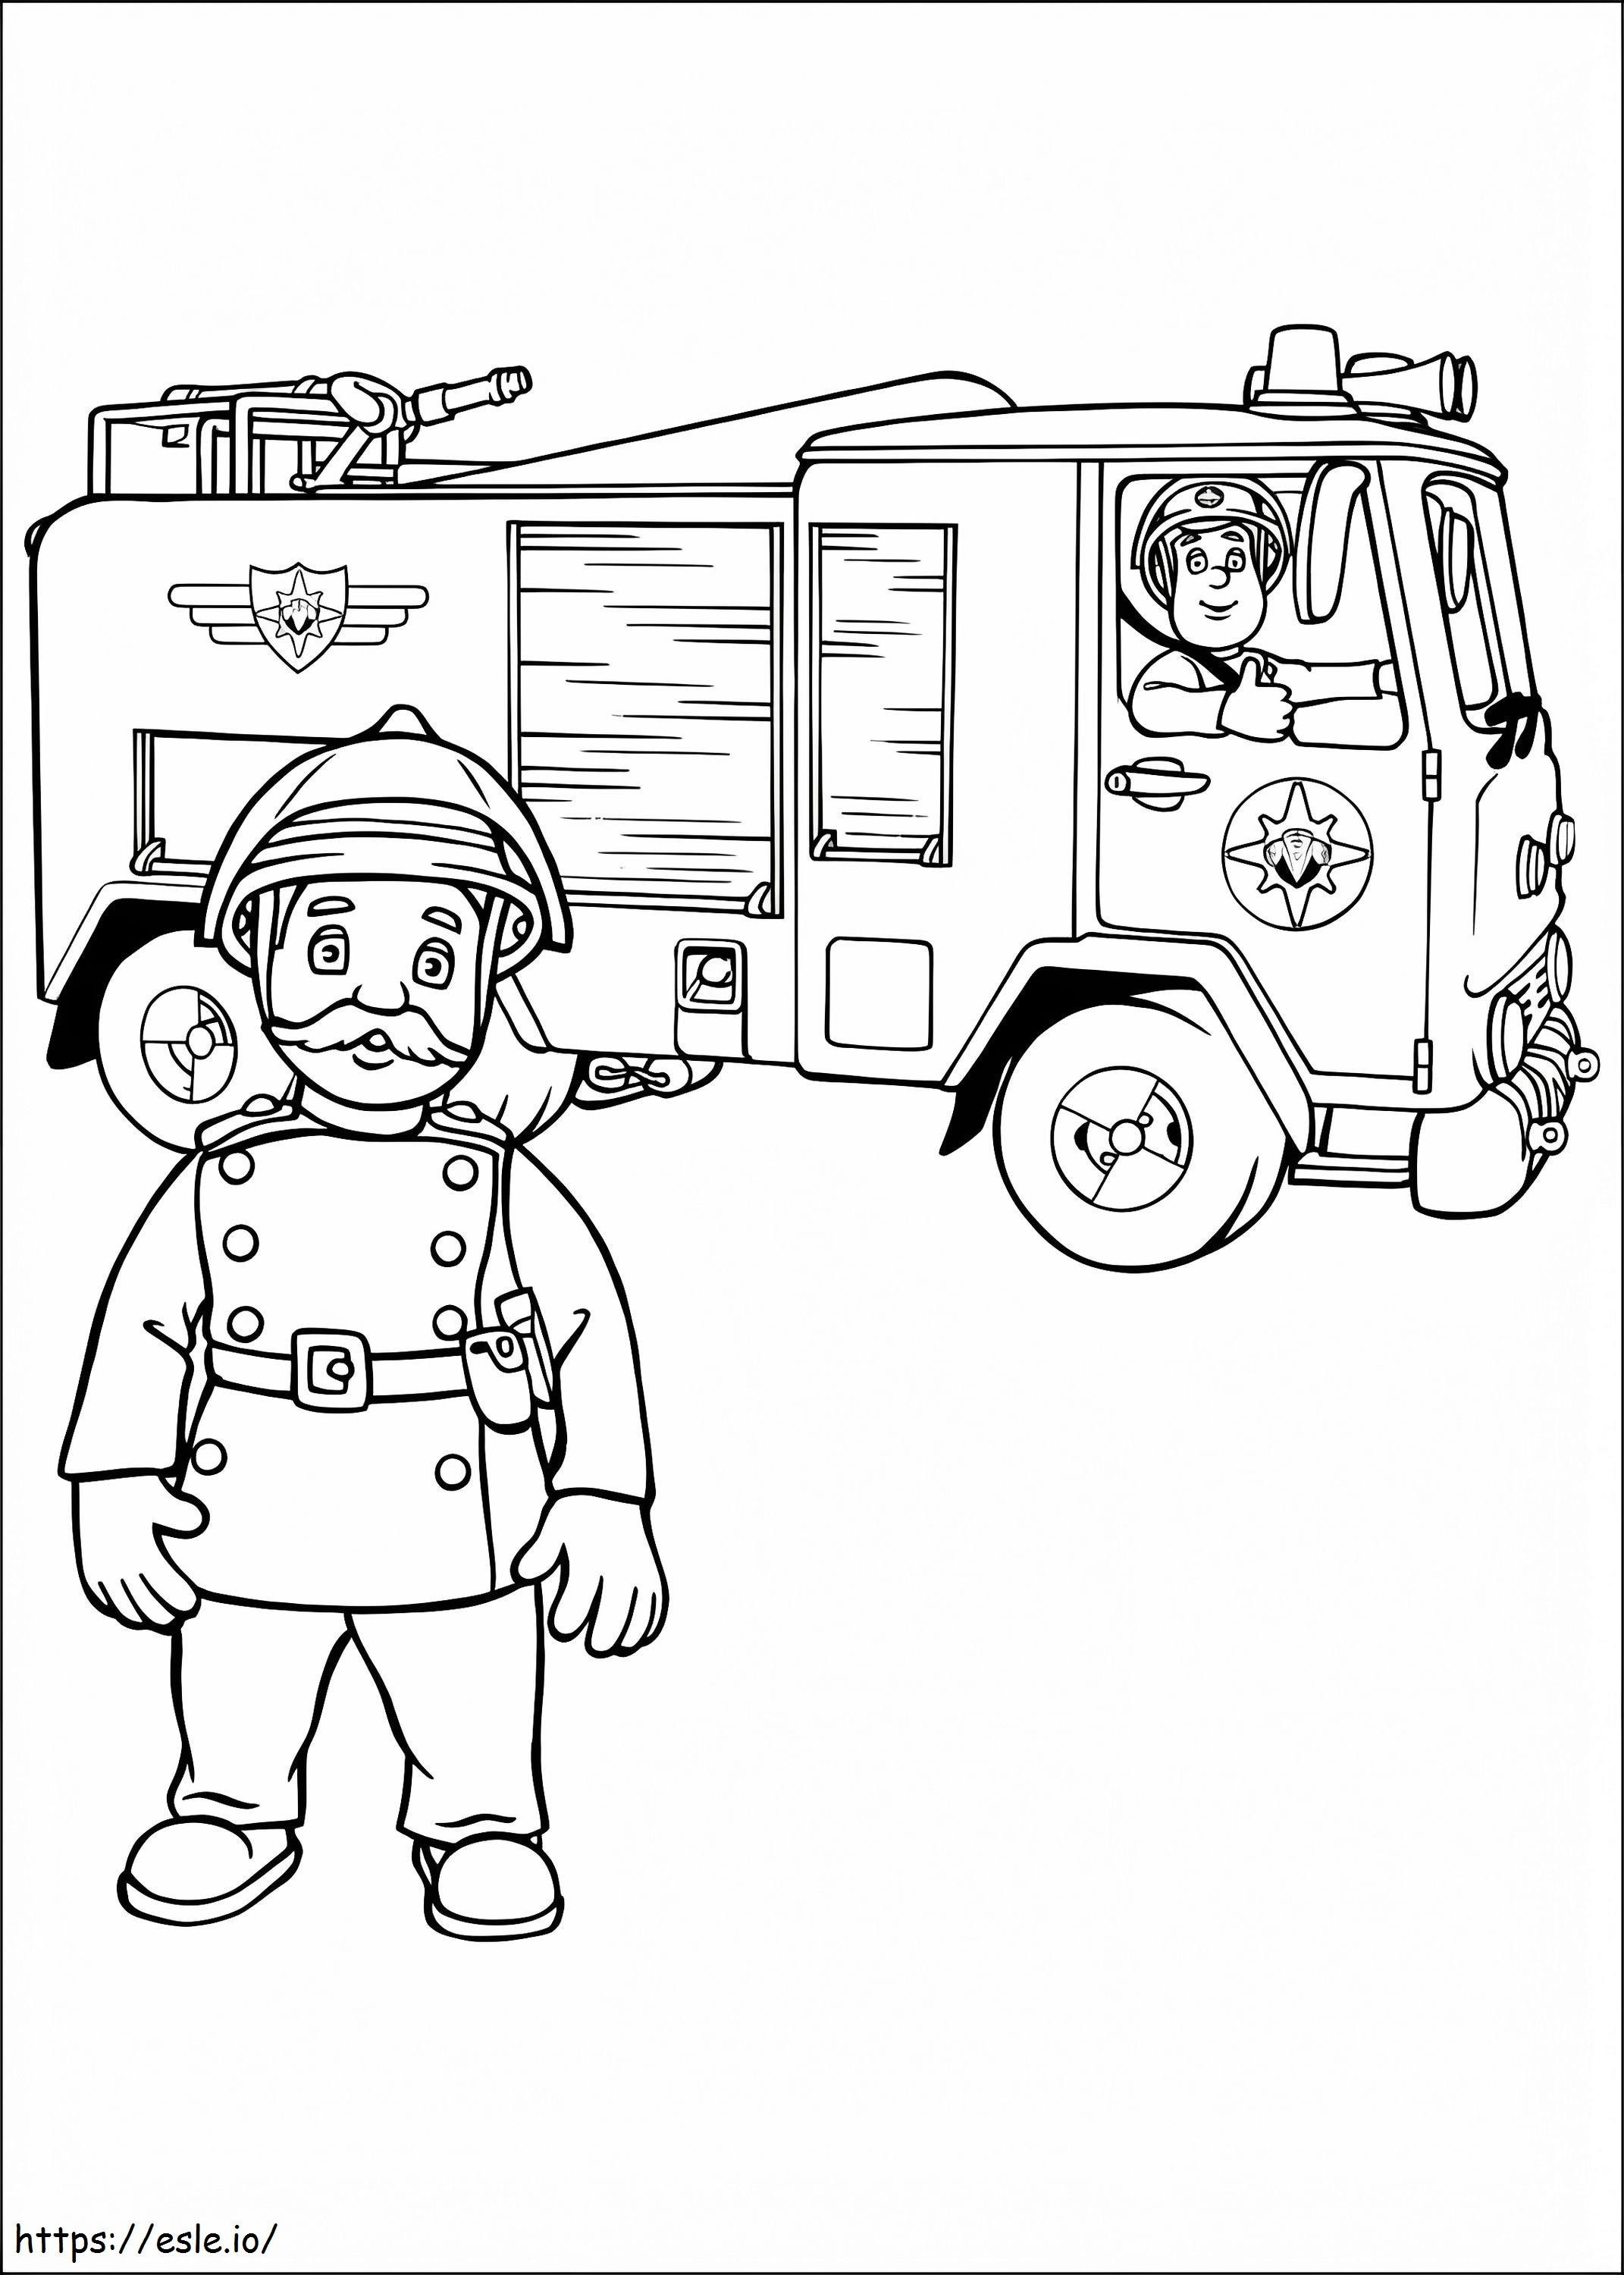 Personajes de Sam el bombero 9 para colorear